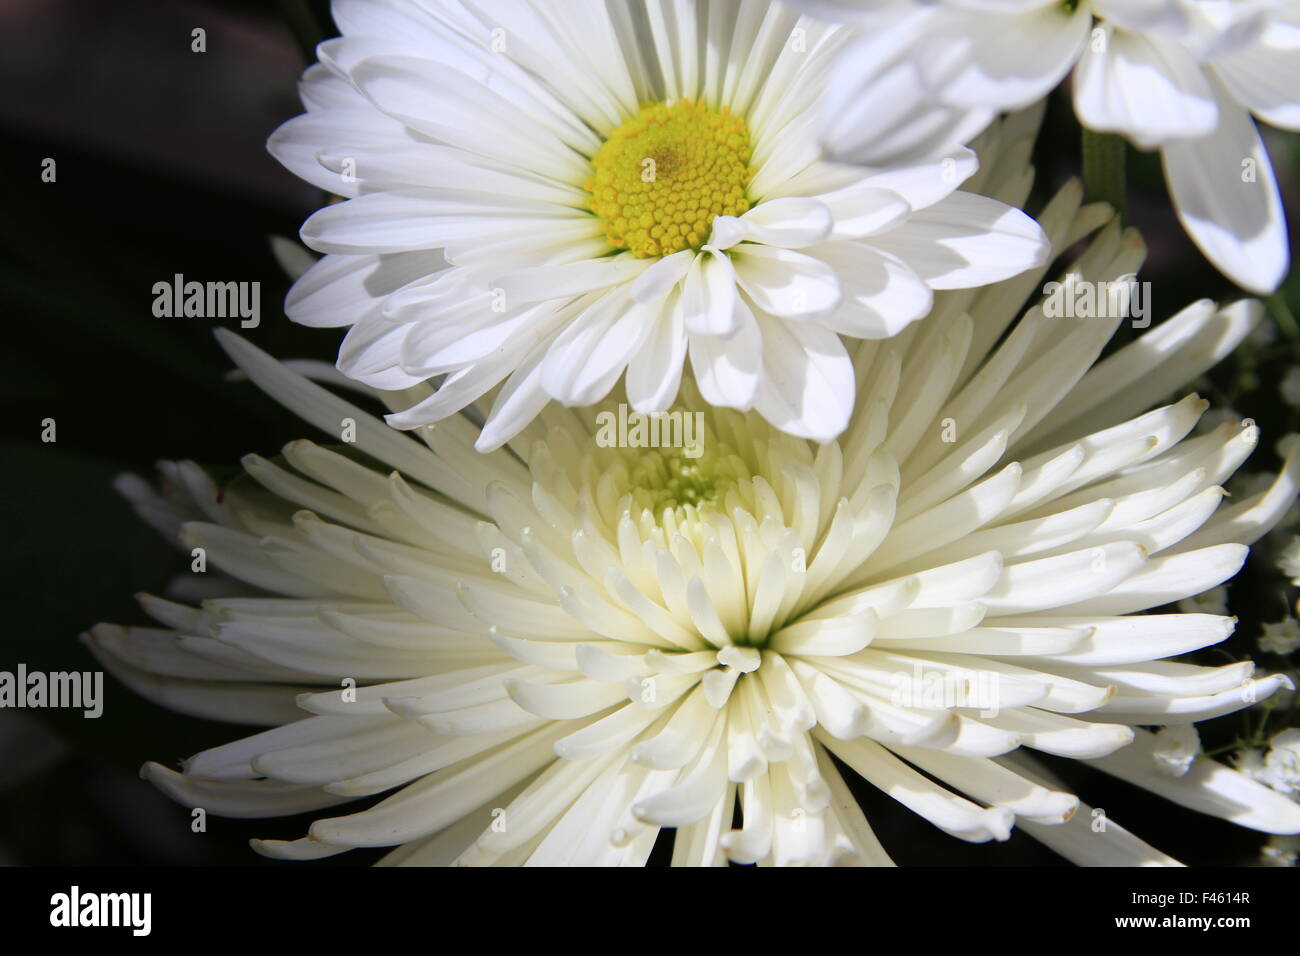 White daisy and white spider mum flowers Stock Photo